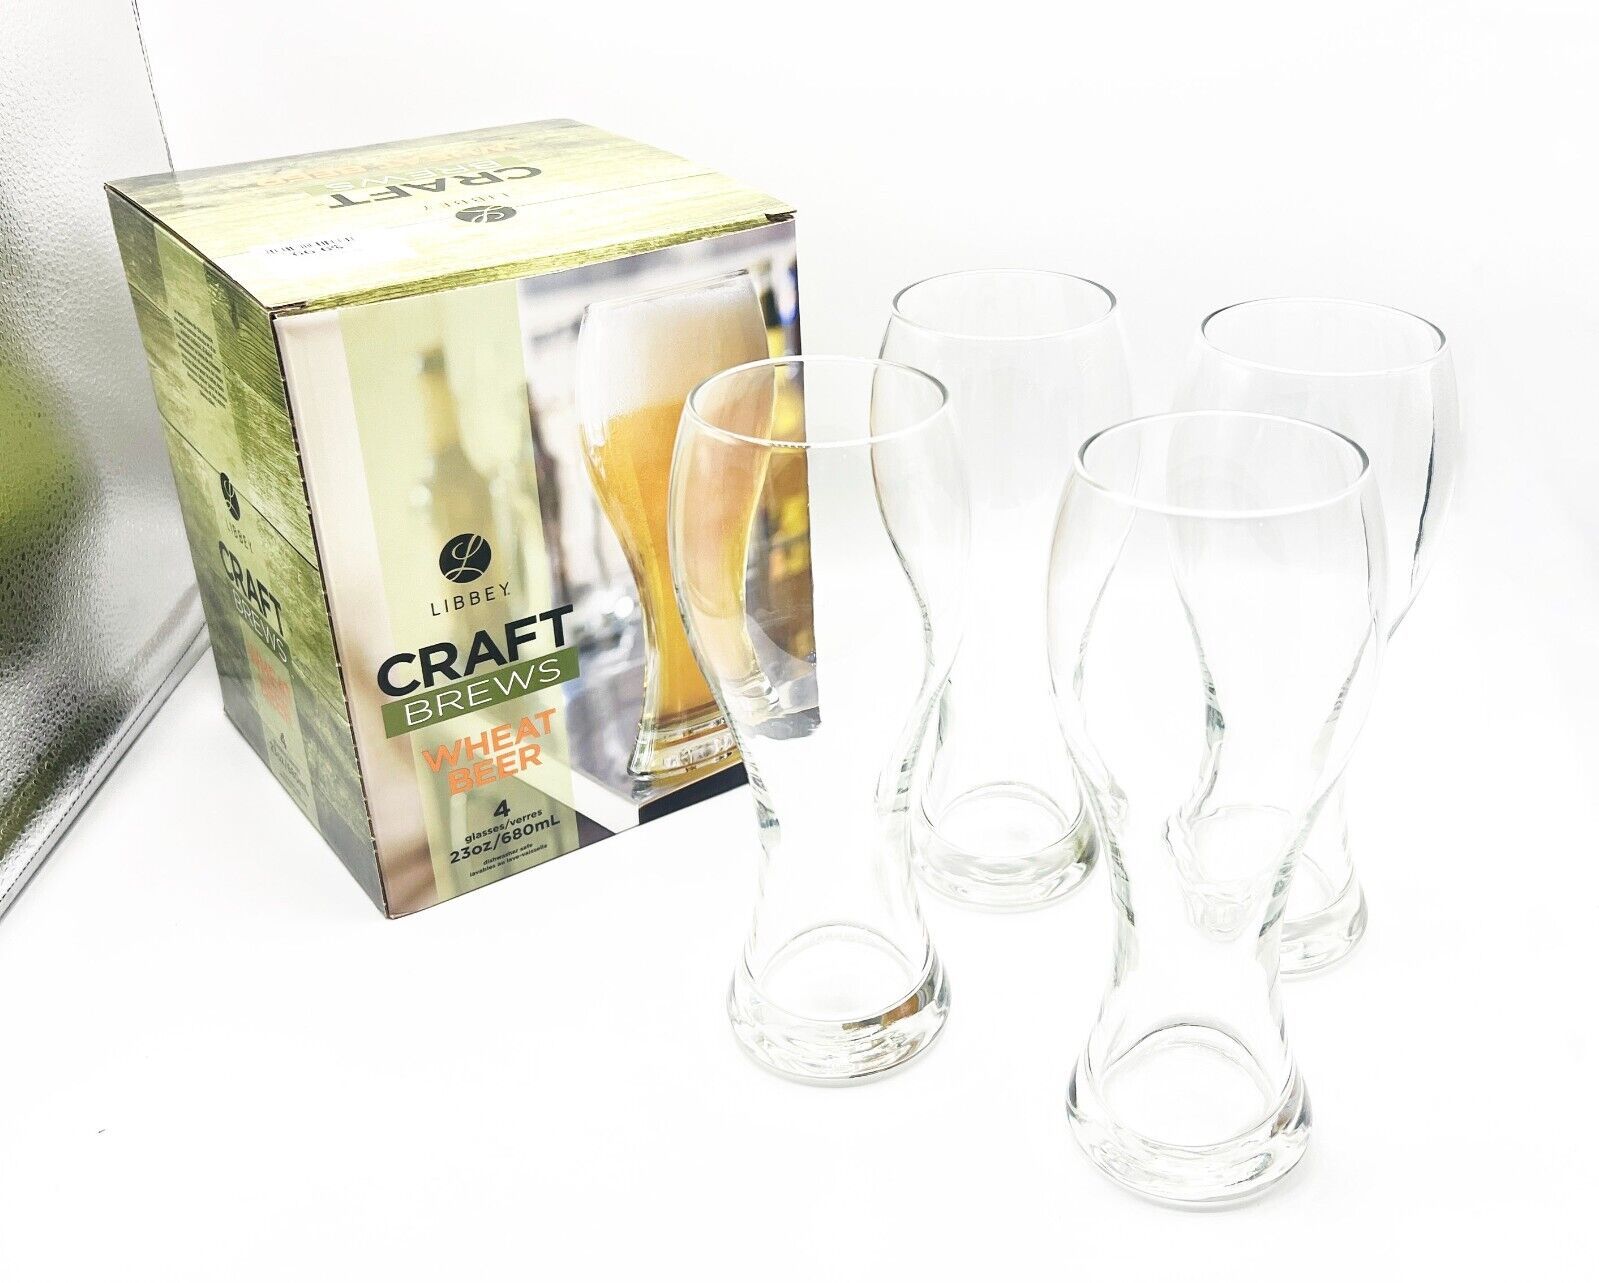 Libbey Craft Brews Wheat Beer Glasses, 23oz / 680ml  Pilsner Glasses, Set of 4 - $18.33